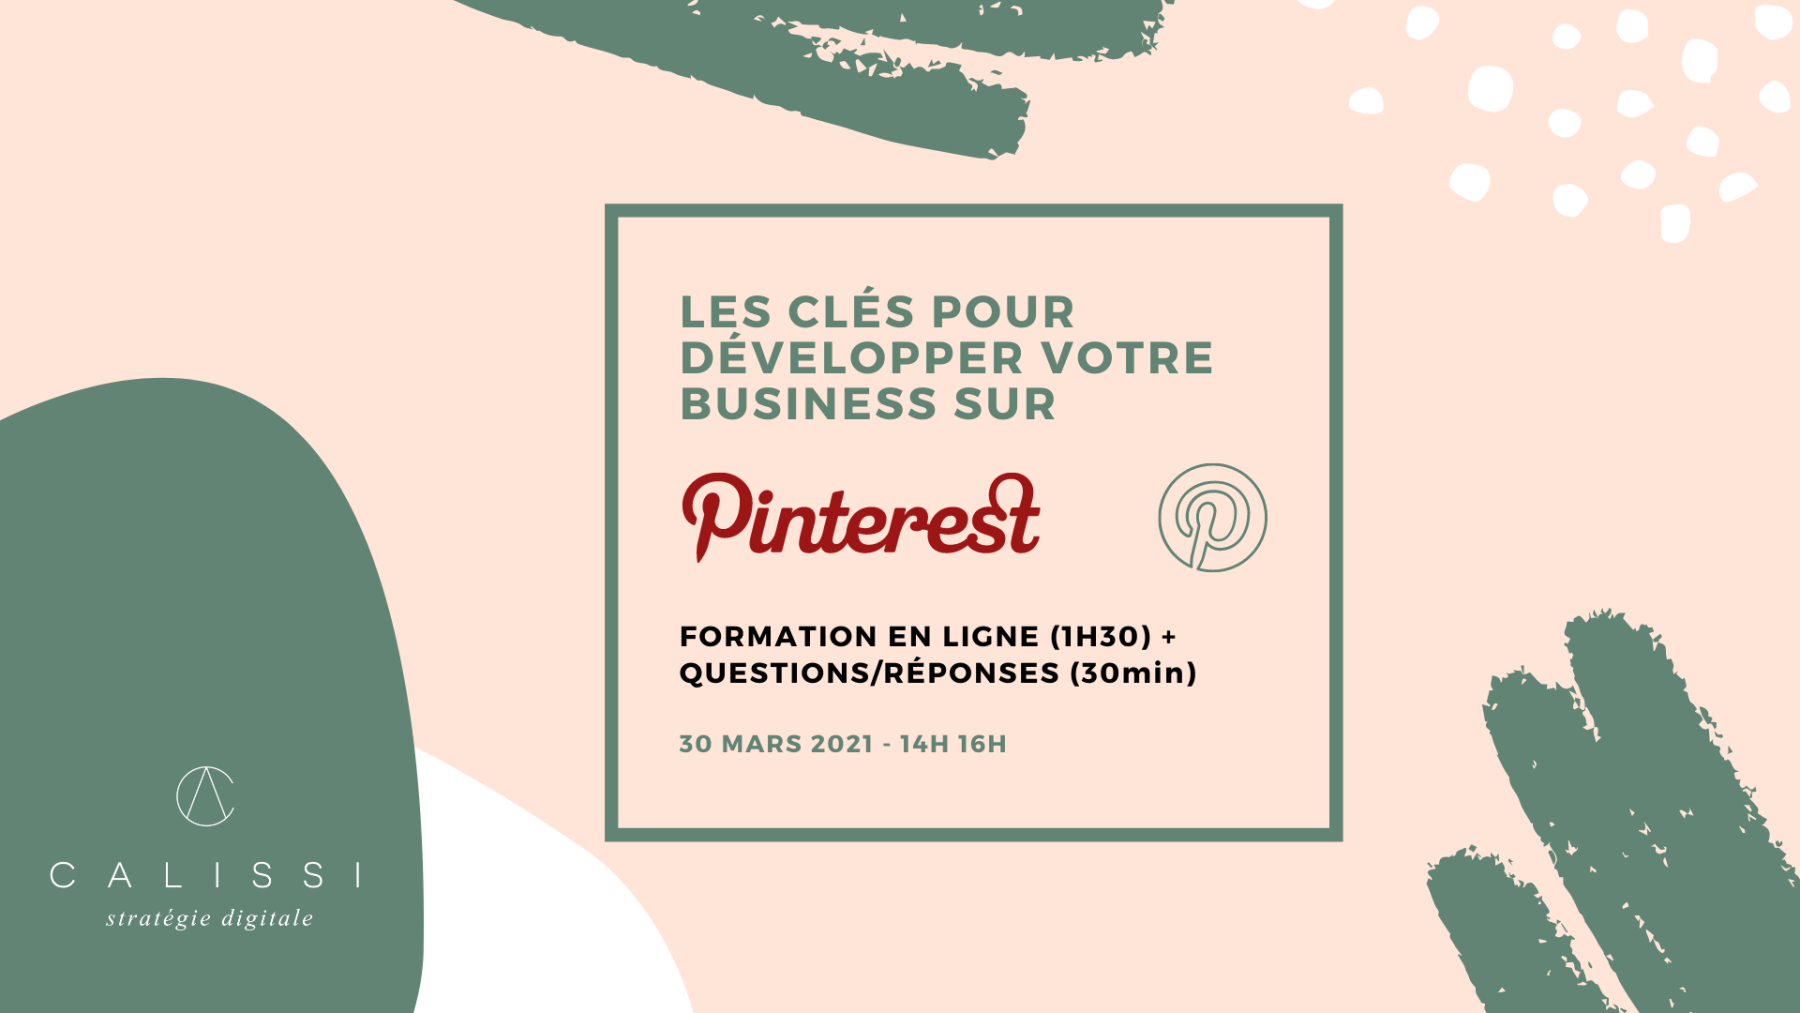 Formation Pinterest en ligne le 30 mars 2021